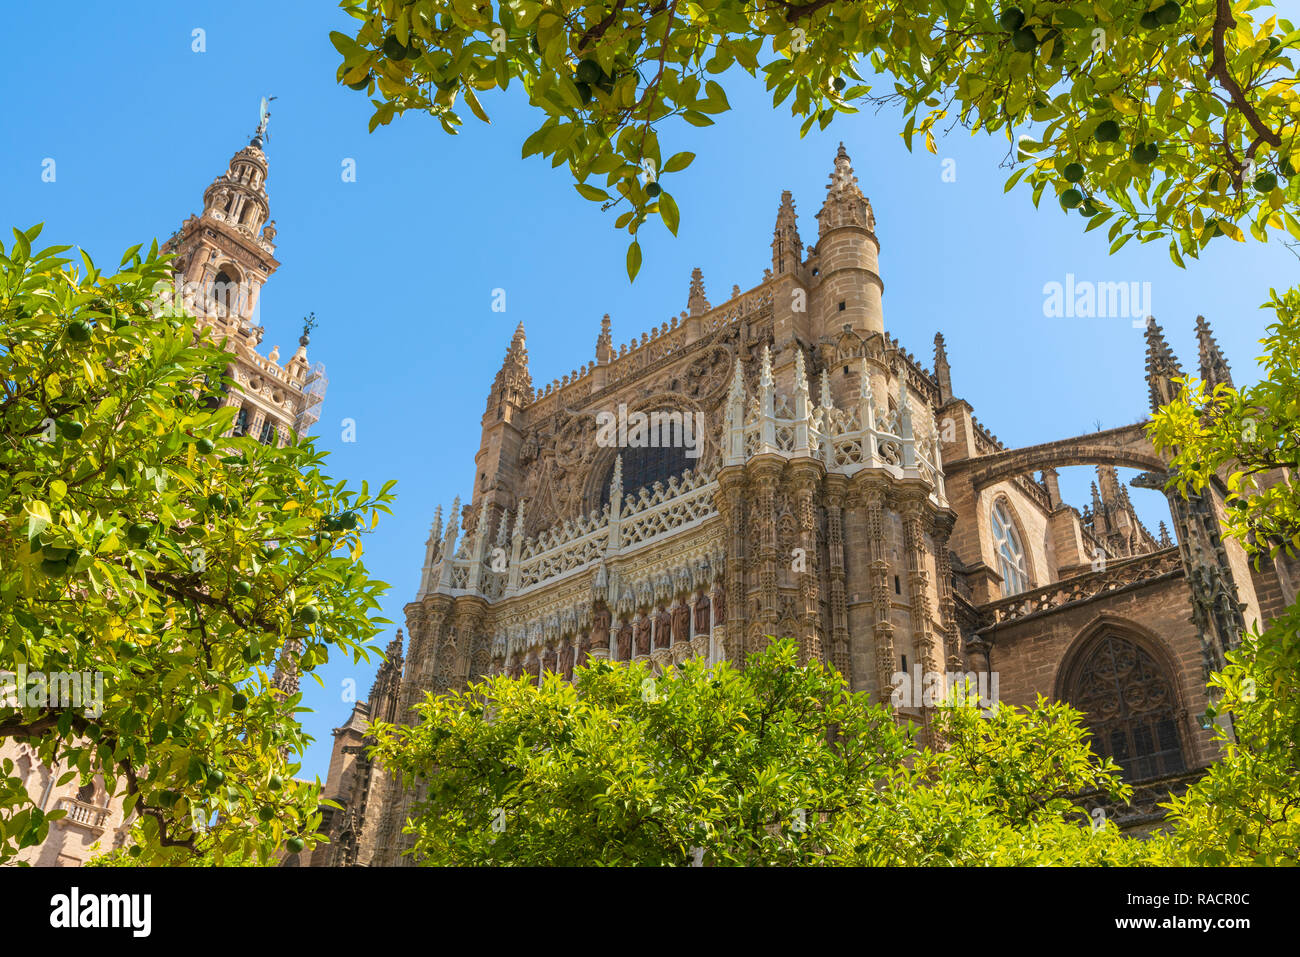 Die gotische barocken Glockenturm Giralda von Sevilla Kathedrale von Patio de Los Naranjos, UNESCO-Weltkulturerbe, Sevilla, Andalusien, Spanien, Europa Stockfoto